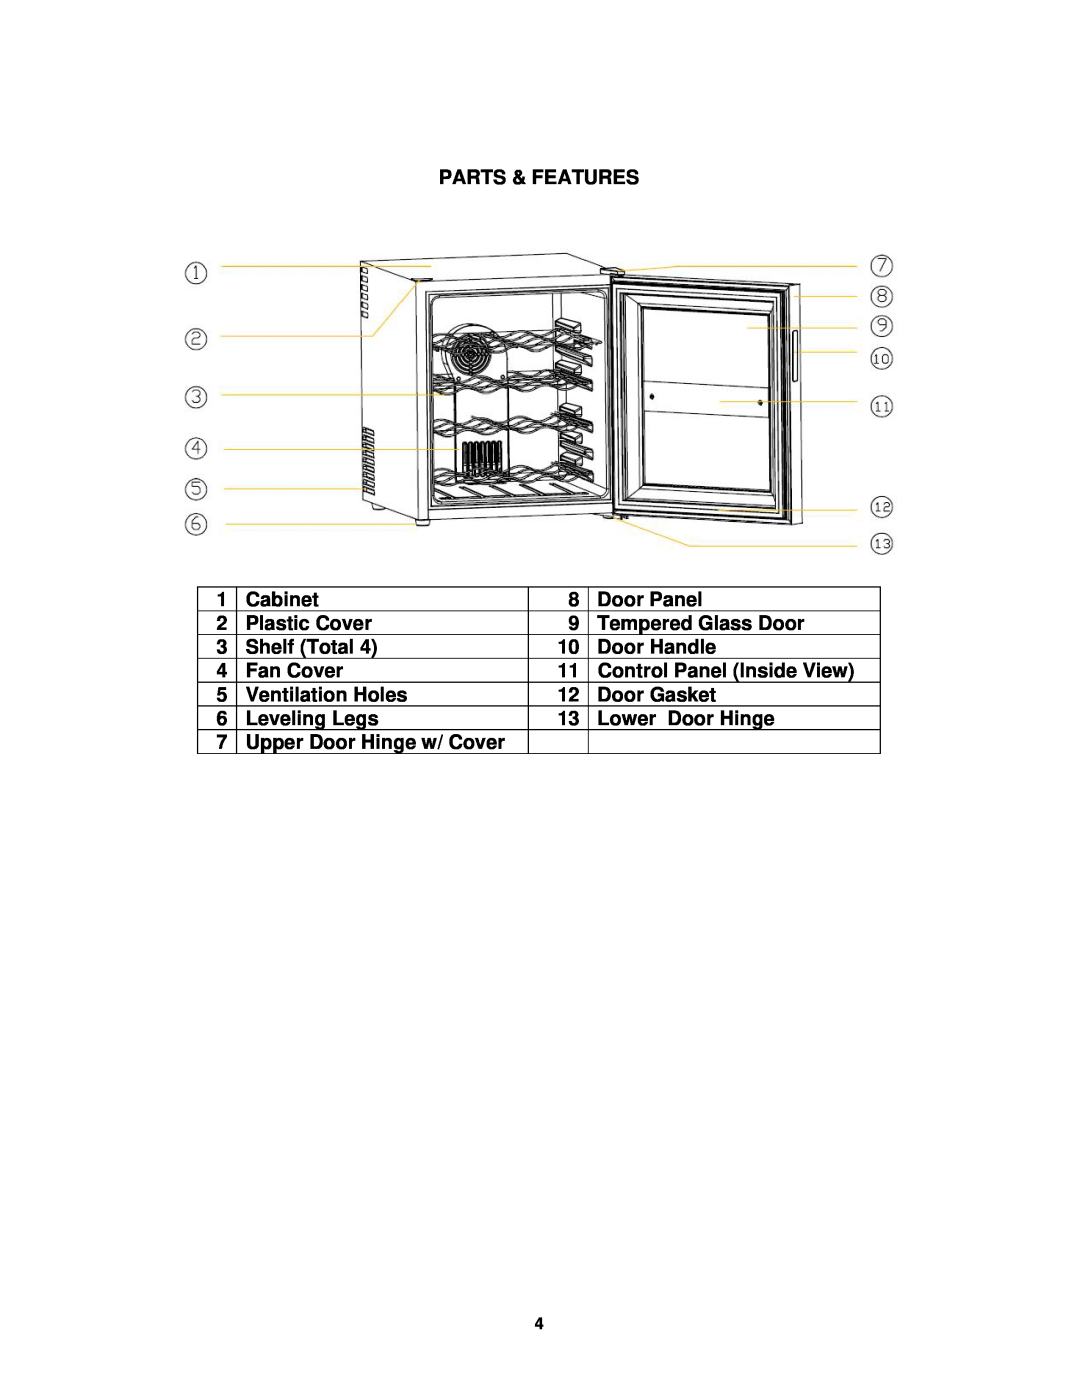 Avanti EWC1600M Parts & Features, Cabinet, Door Panel, Plastic Cover, Tempered Glass Door, Shelf Total, Door Handle 